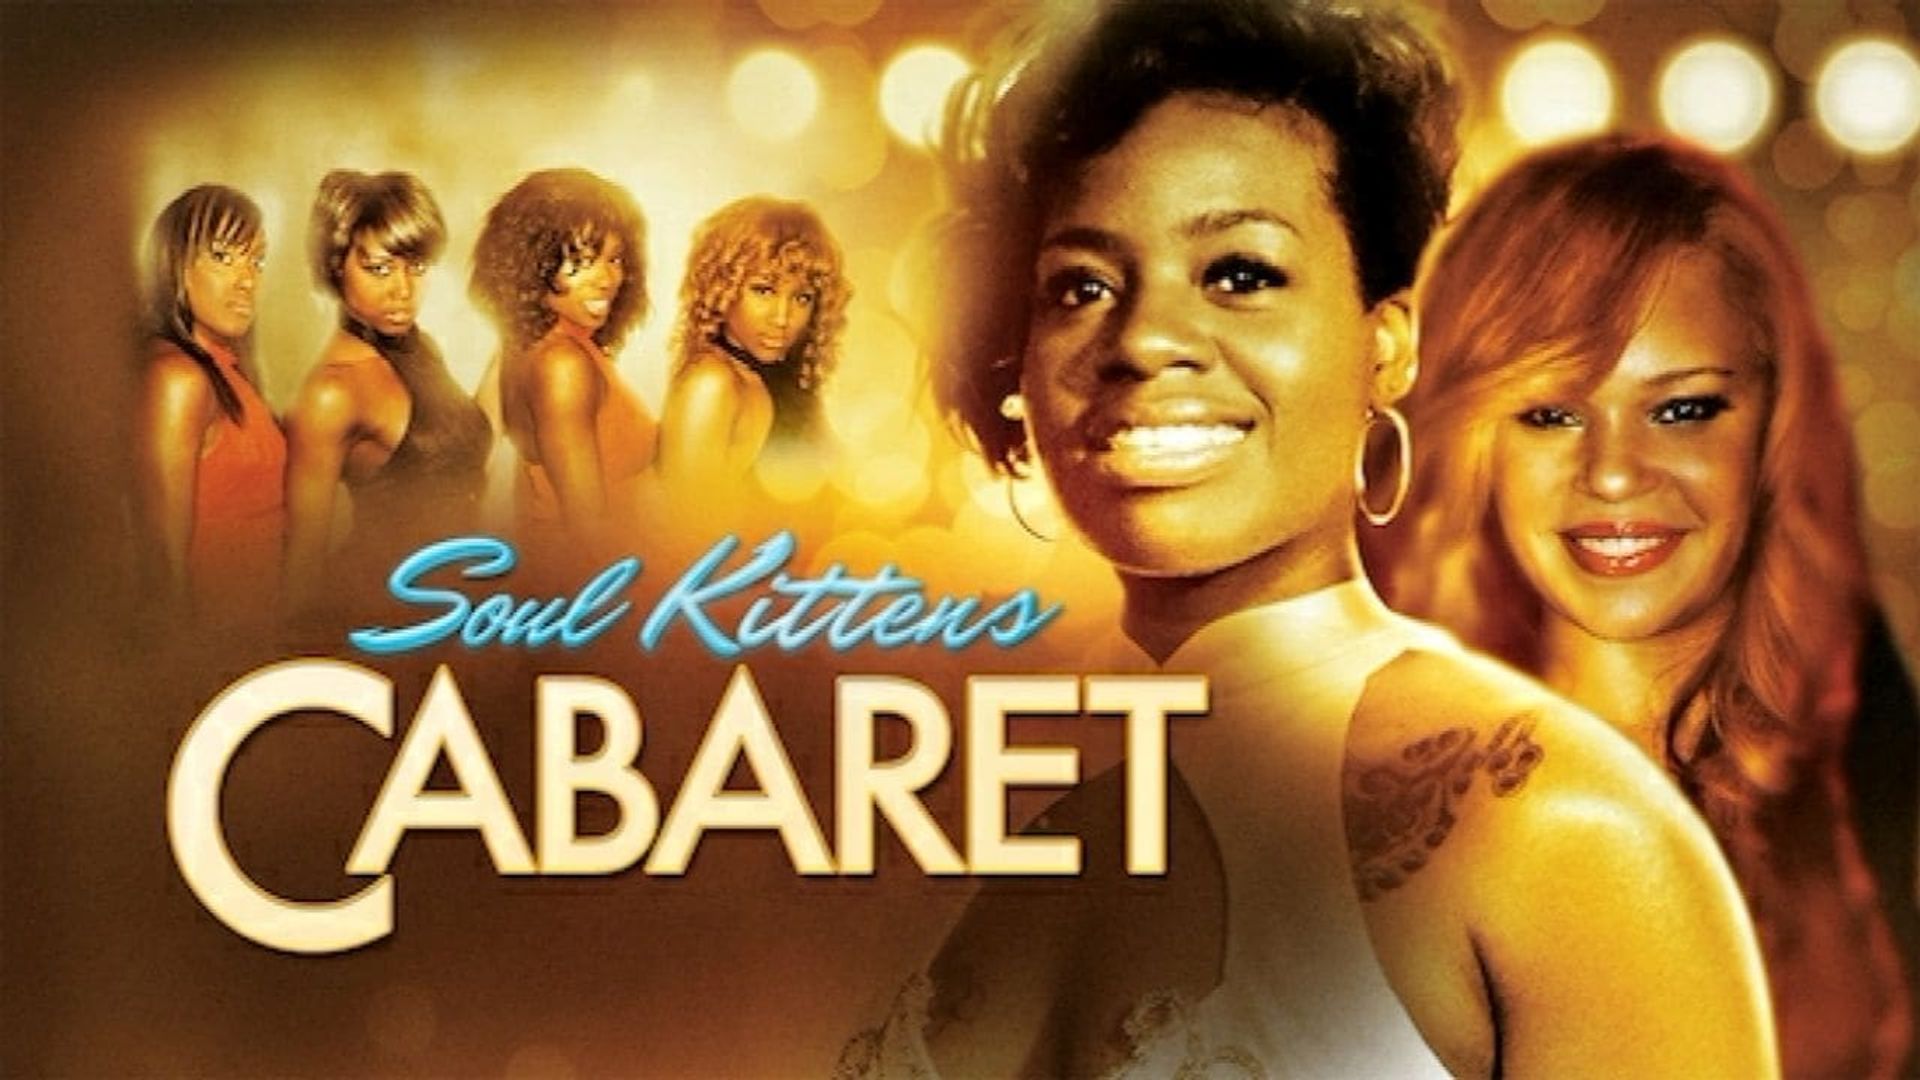 Soul Kittens Cabaret background